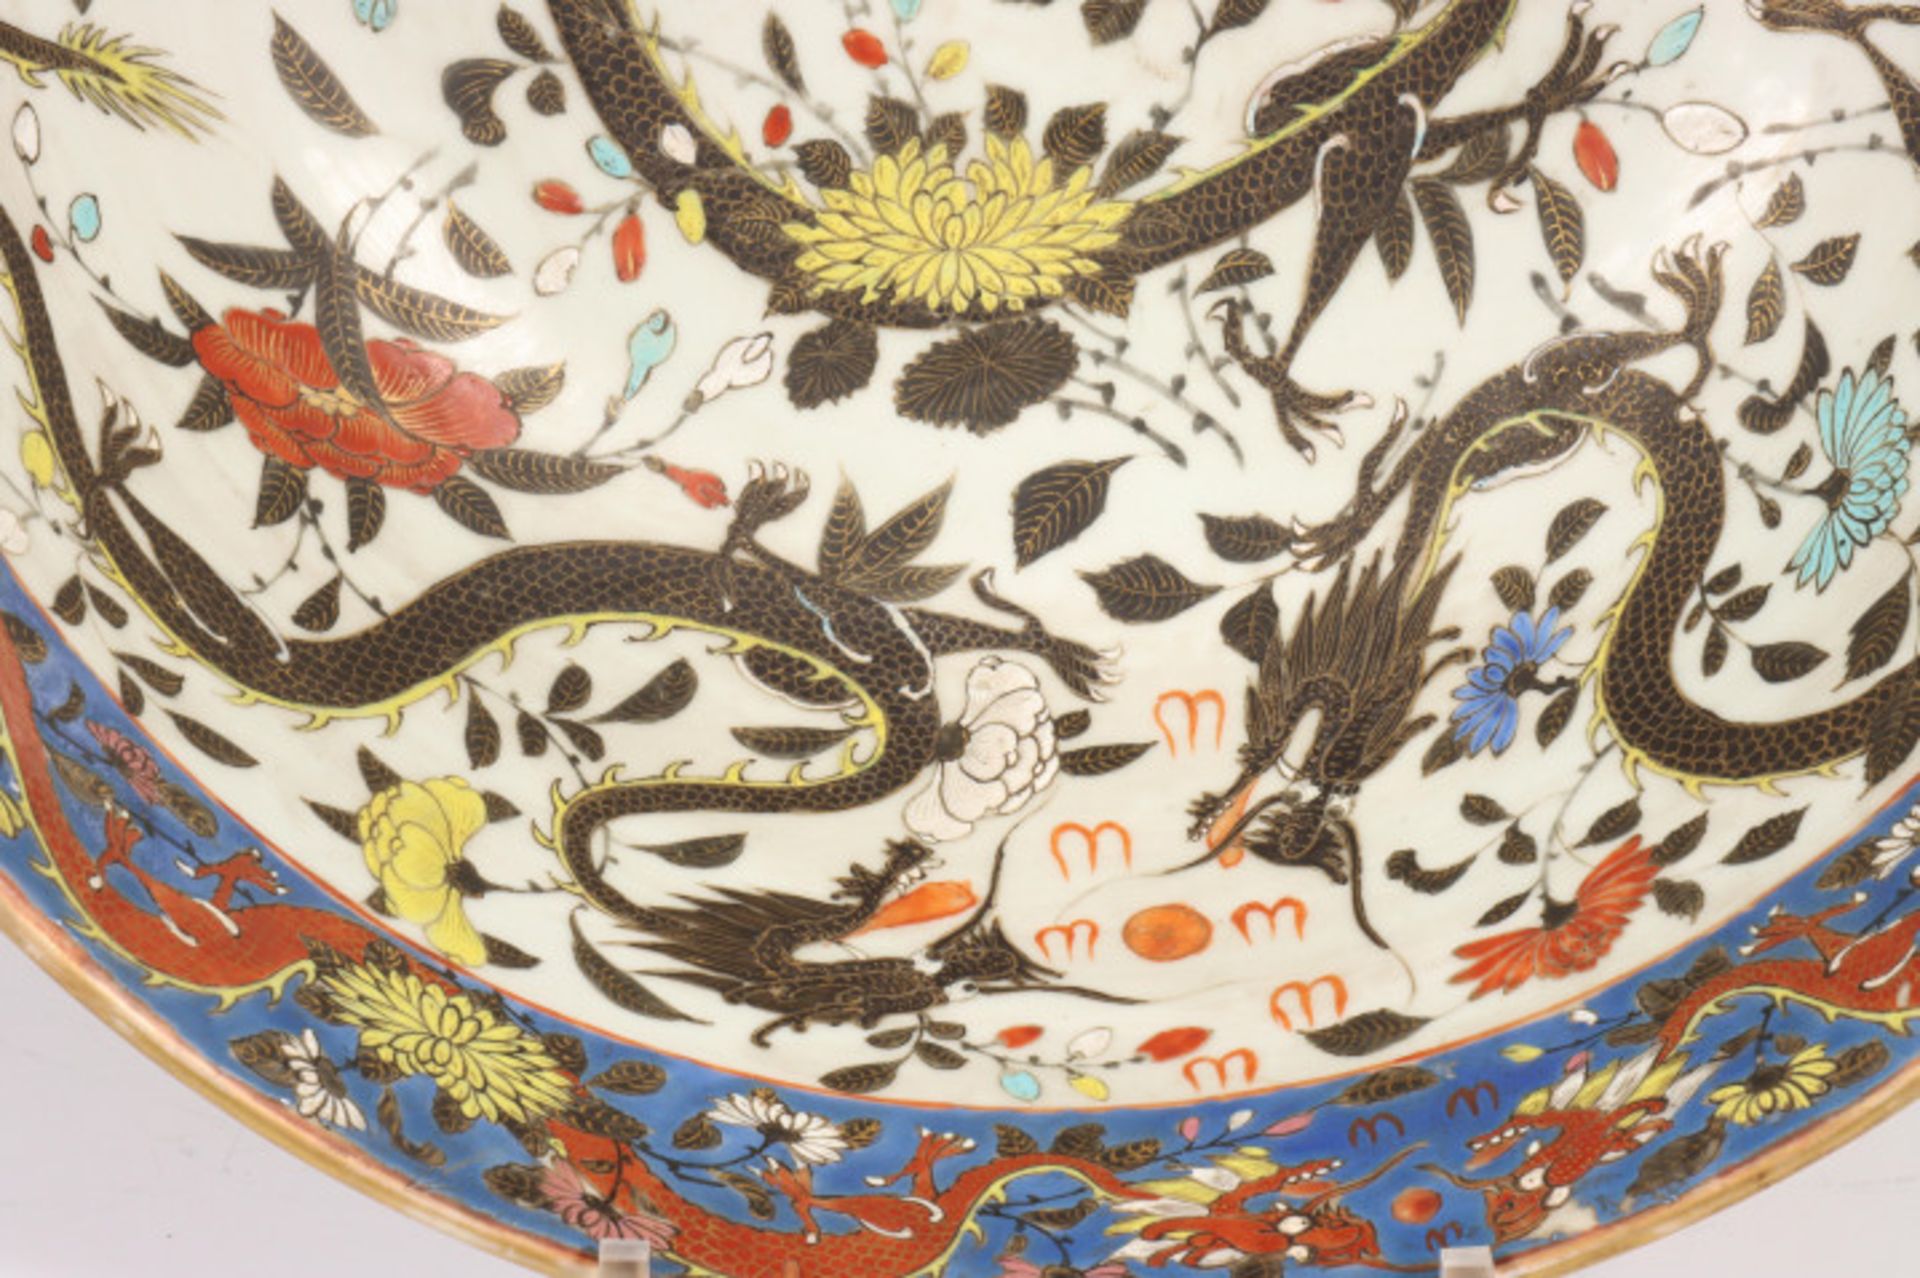 China, Kanton, kapitale porseleinen kom, mogelijk laat Qing dynastie, begin 20e eeuw, - Image 8 of 10